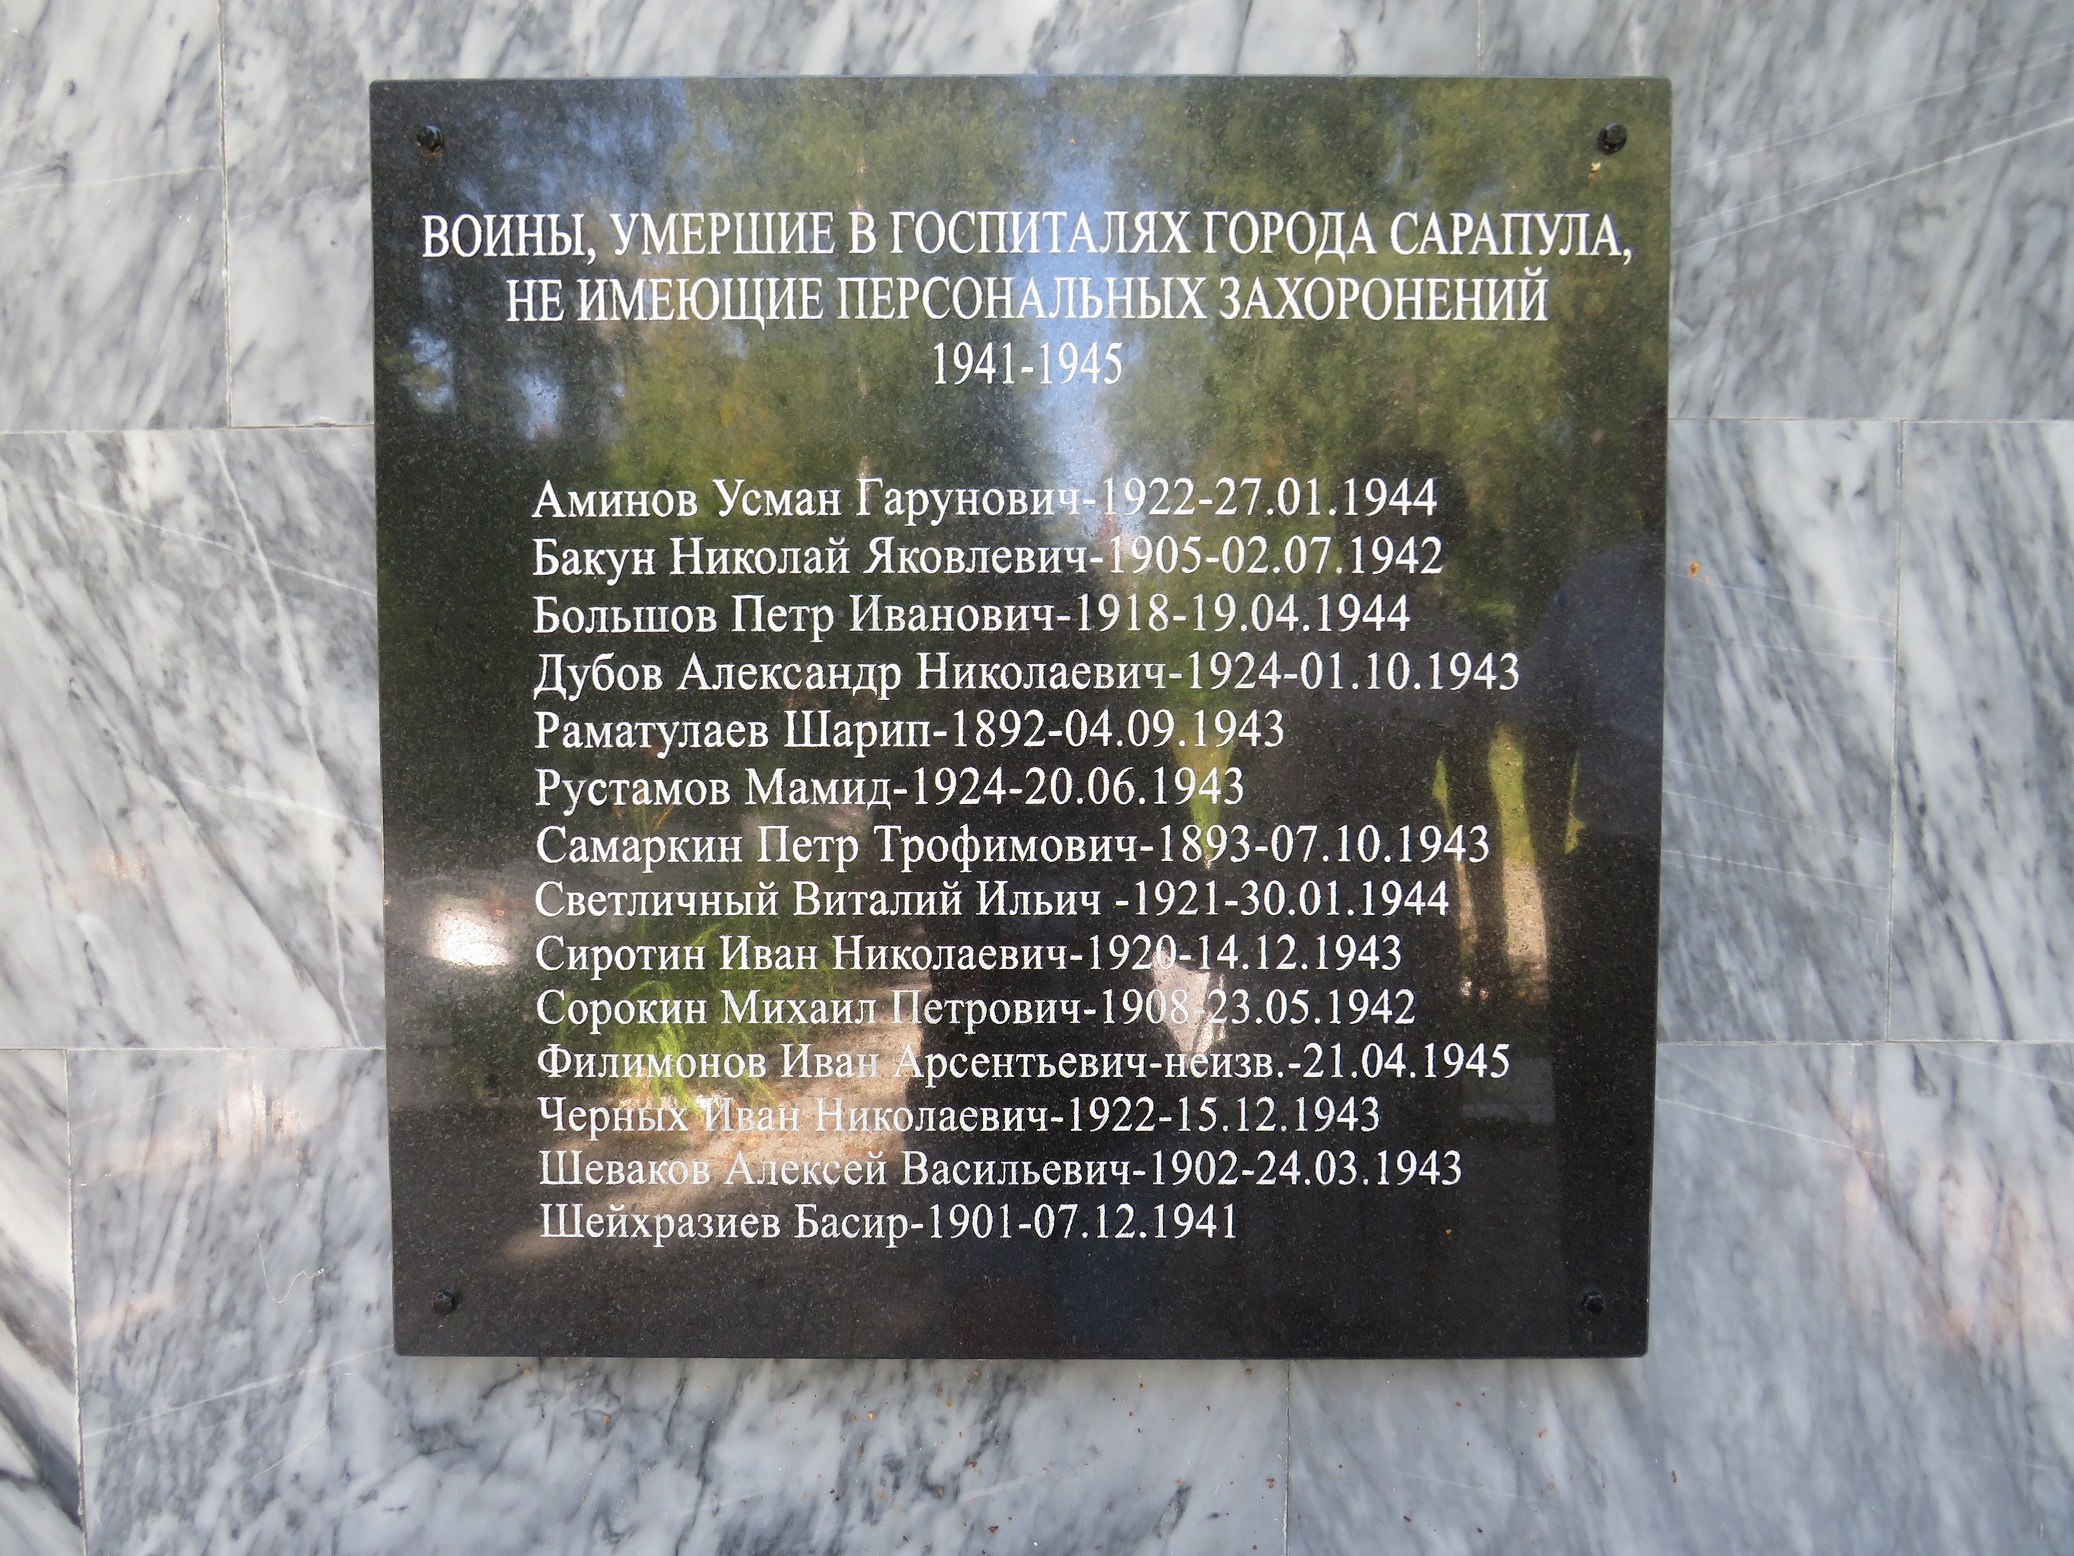 Мемориальная доска на обелиске с именами воинов, не имеющих персональных захоронений